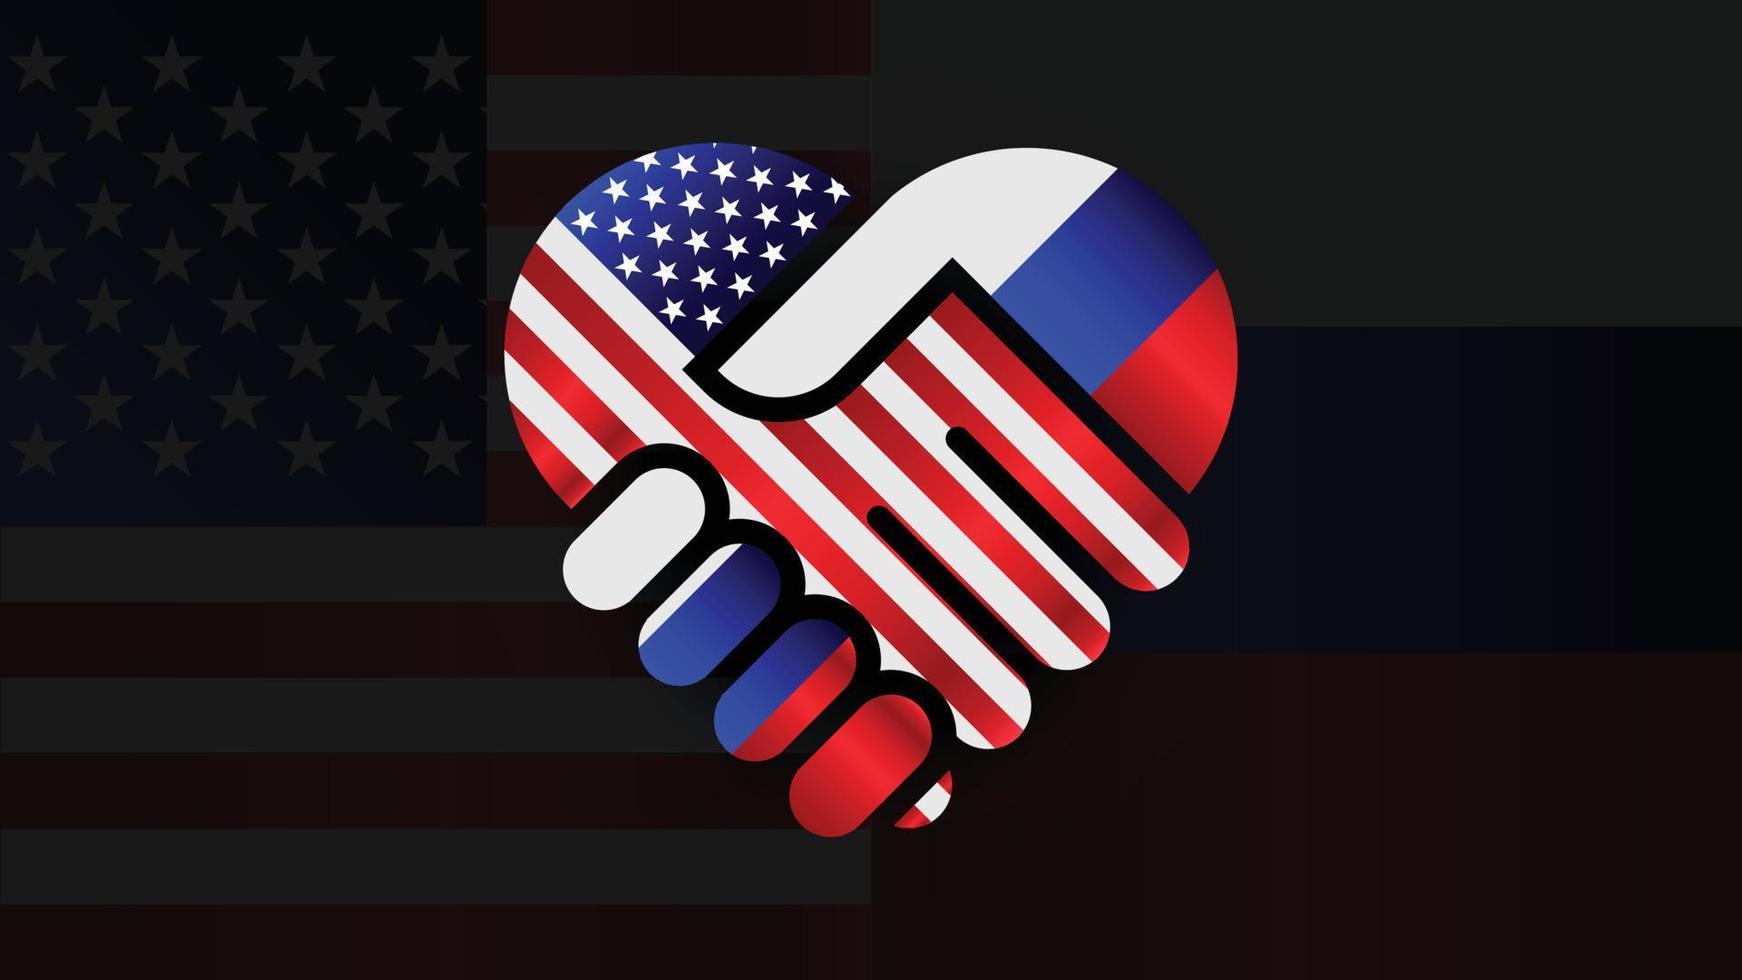 banderas de los estados unidos de américa y rusia en relaciones apretón de manos. dos banderas juntas. Uso adecuado para eventos de Rusia y América. vector